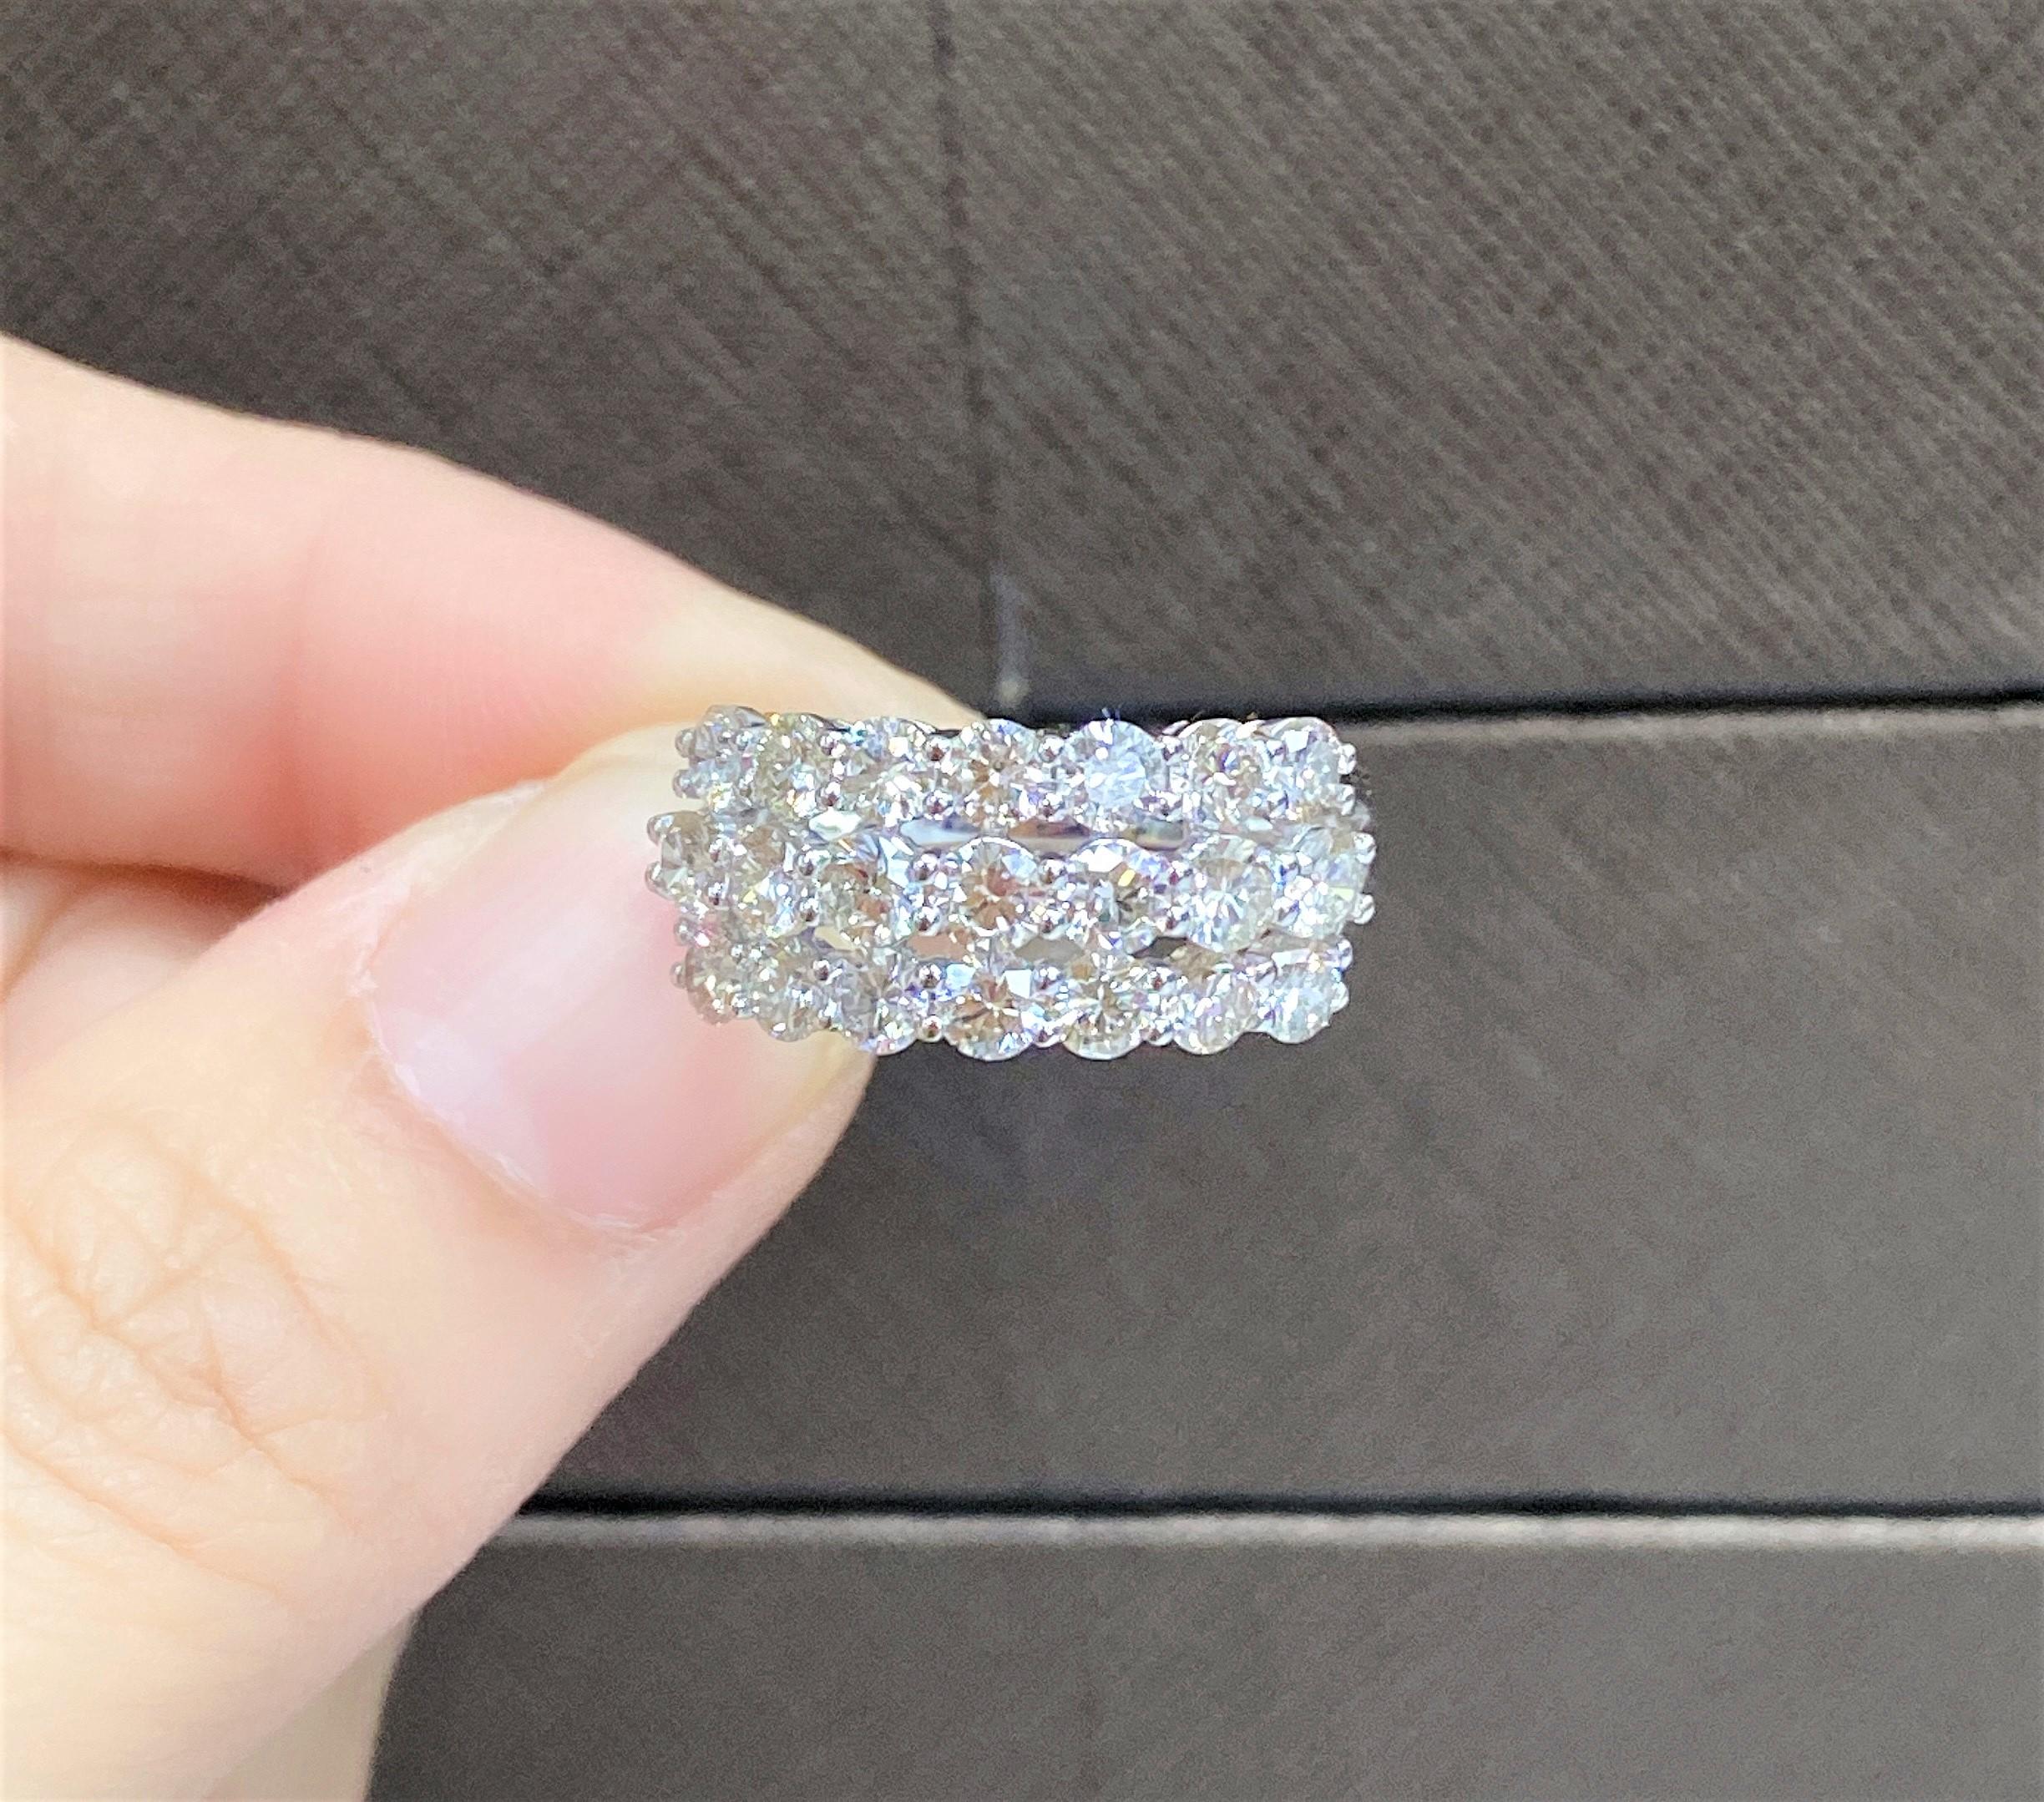 L'article suivant que nous offrons est un Rare Important Radiant 18KT GOLD LARGE THREE ROW ROUND CUT DIAMOND RING. La bague est composée de magnifiques diamants ronds finement sertis, encadrés de magnifiques diamants ronds scintillants. A.C.C. env.